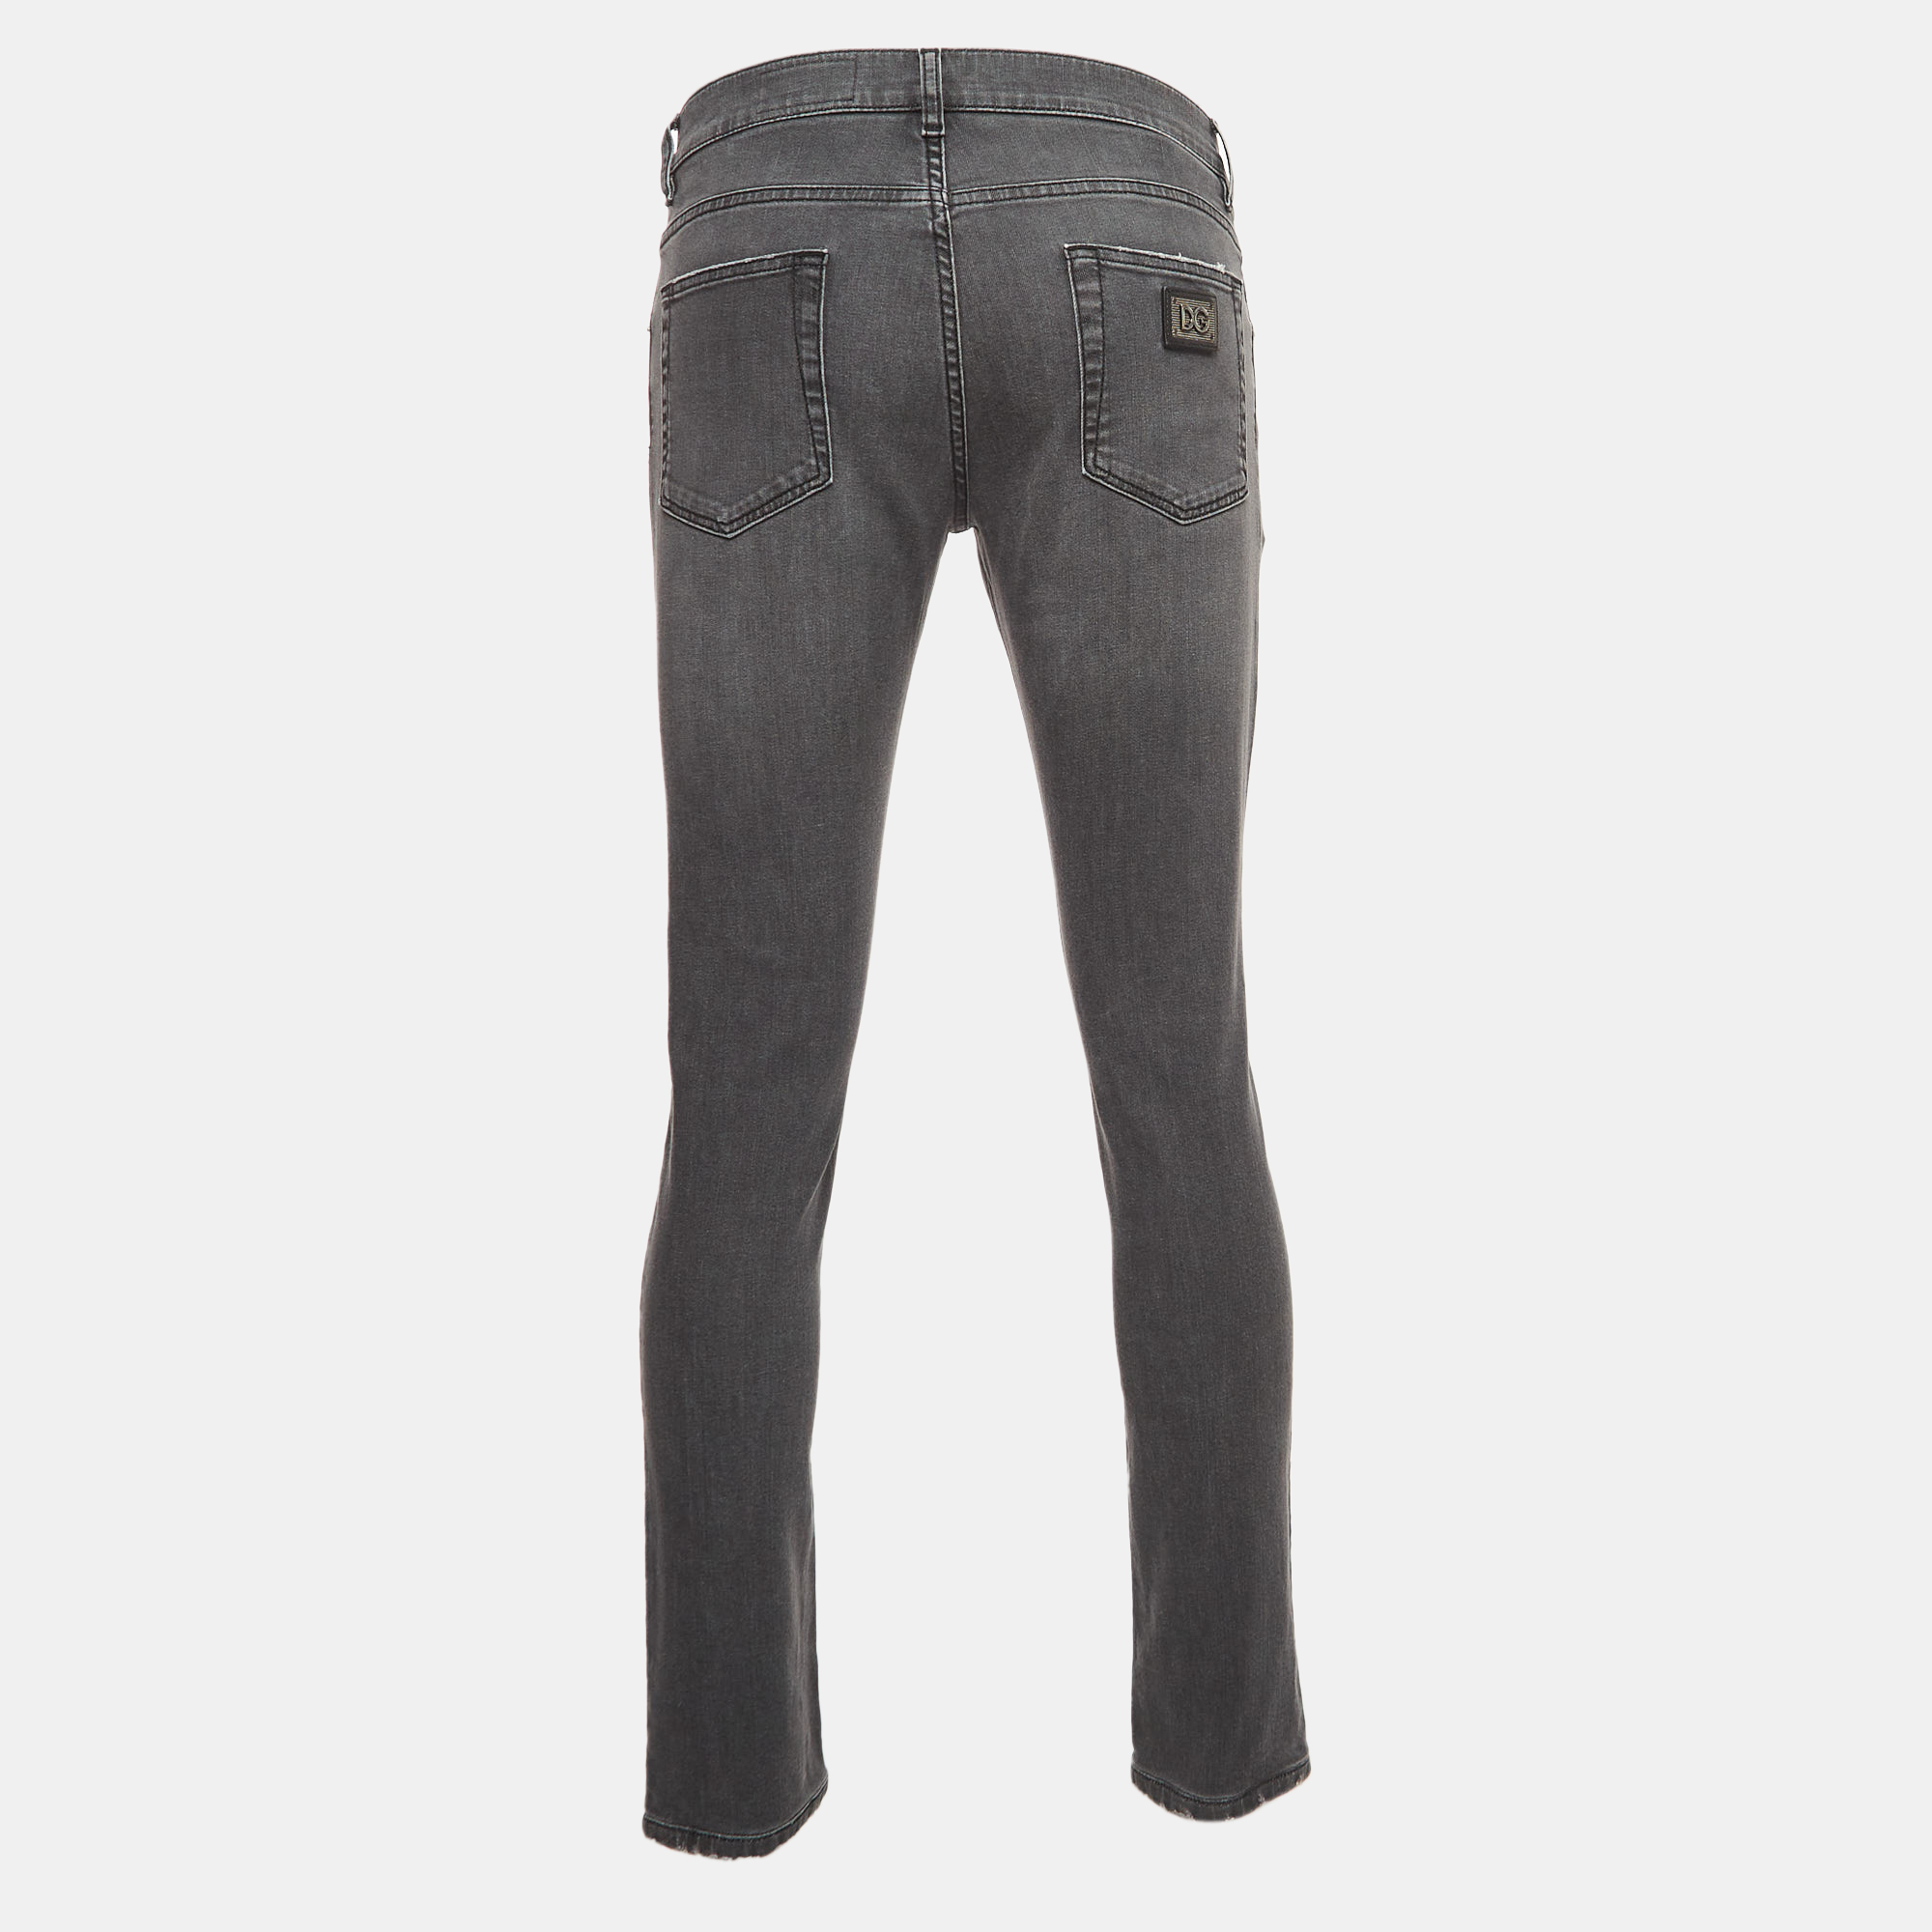 

Dolce & Gabbana Grey Washed Denim Skinny Jeans  Waist 34